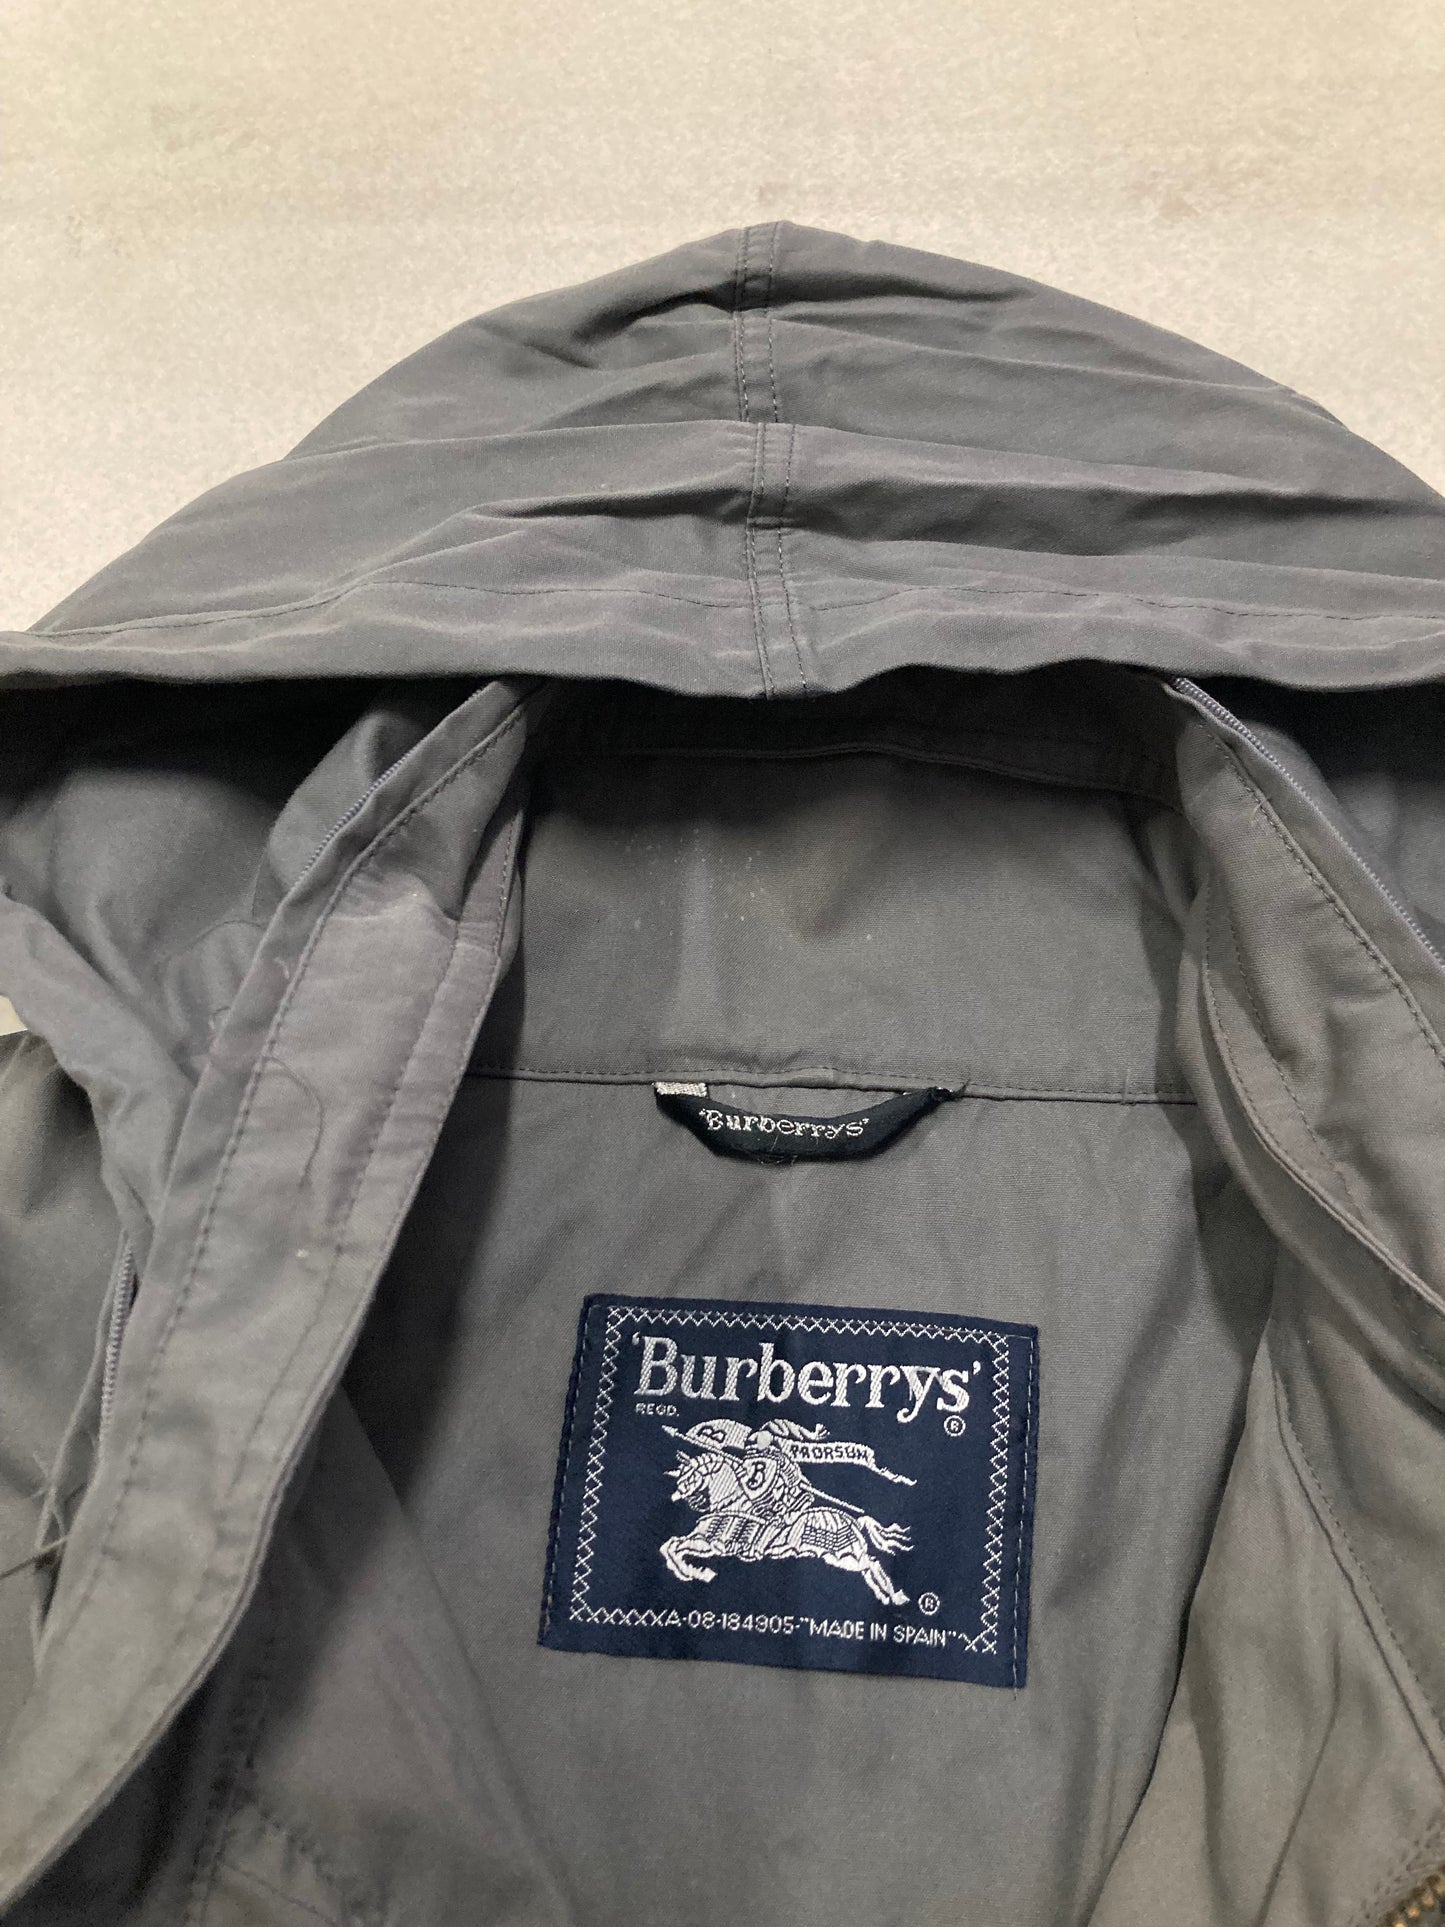 Burberry 80s Vintage Long Coat - L